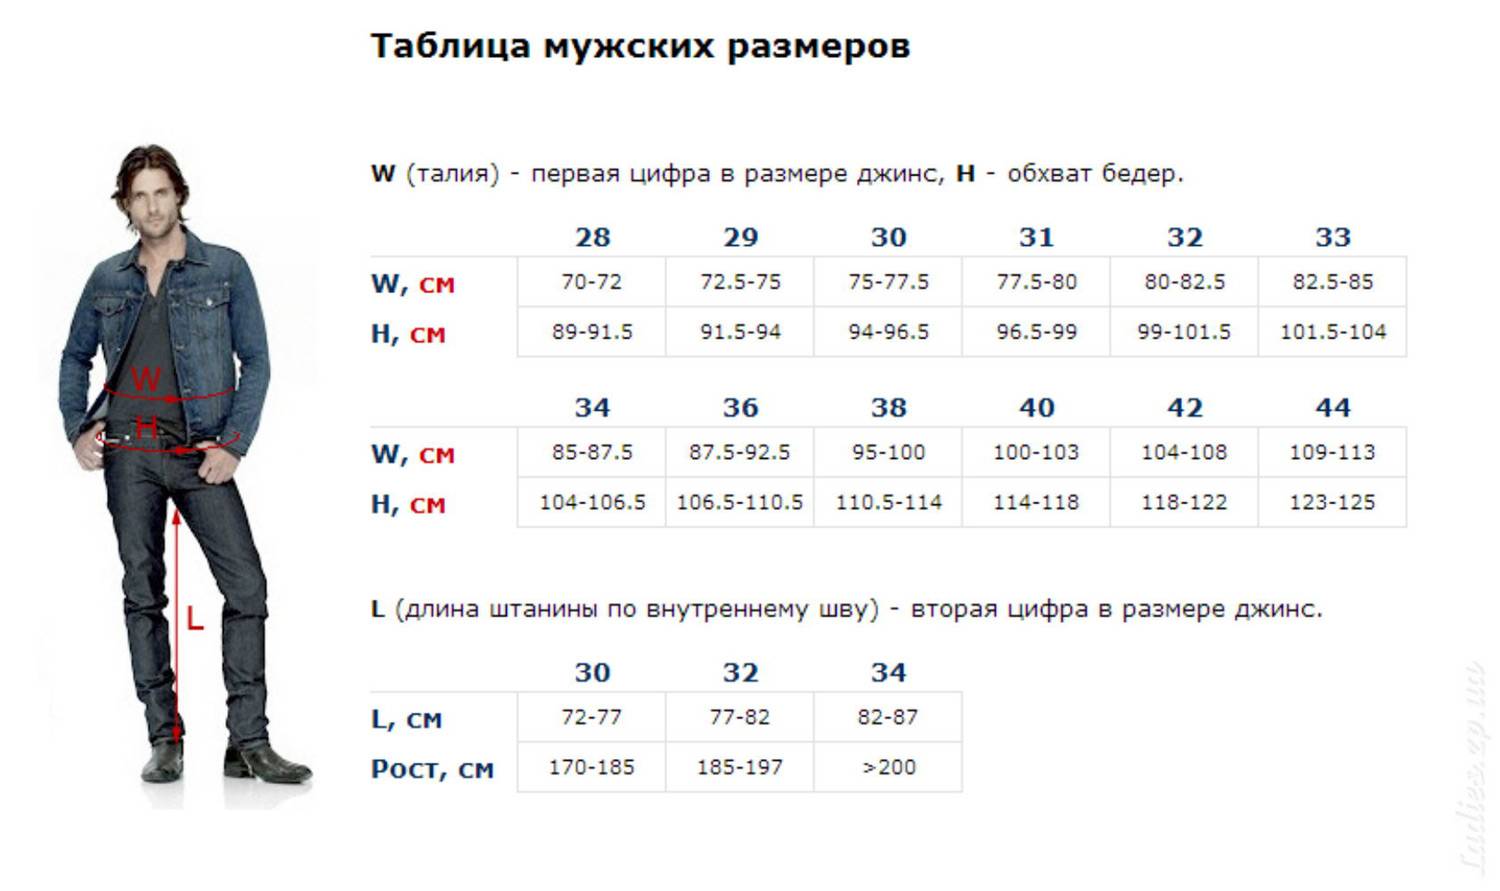 Размеры женских джинсов калькулятор подбора, таблицы сравнение зарубежных с российскими